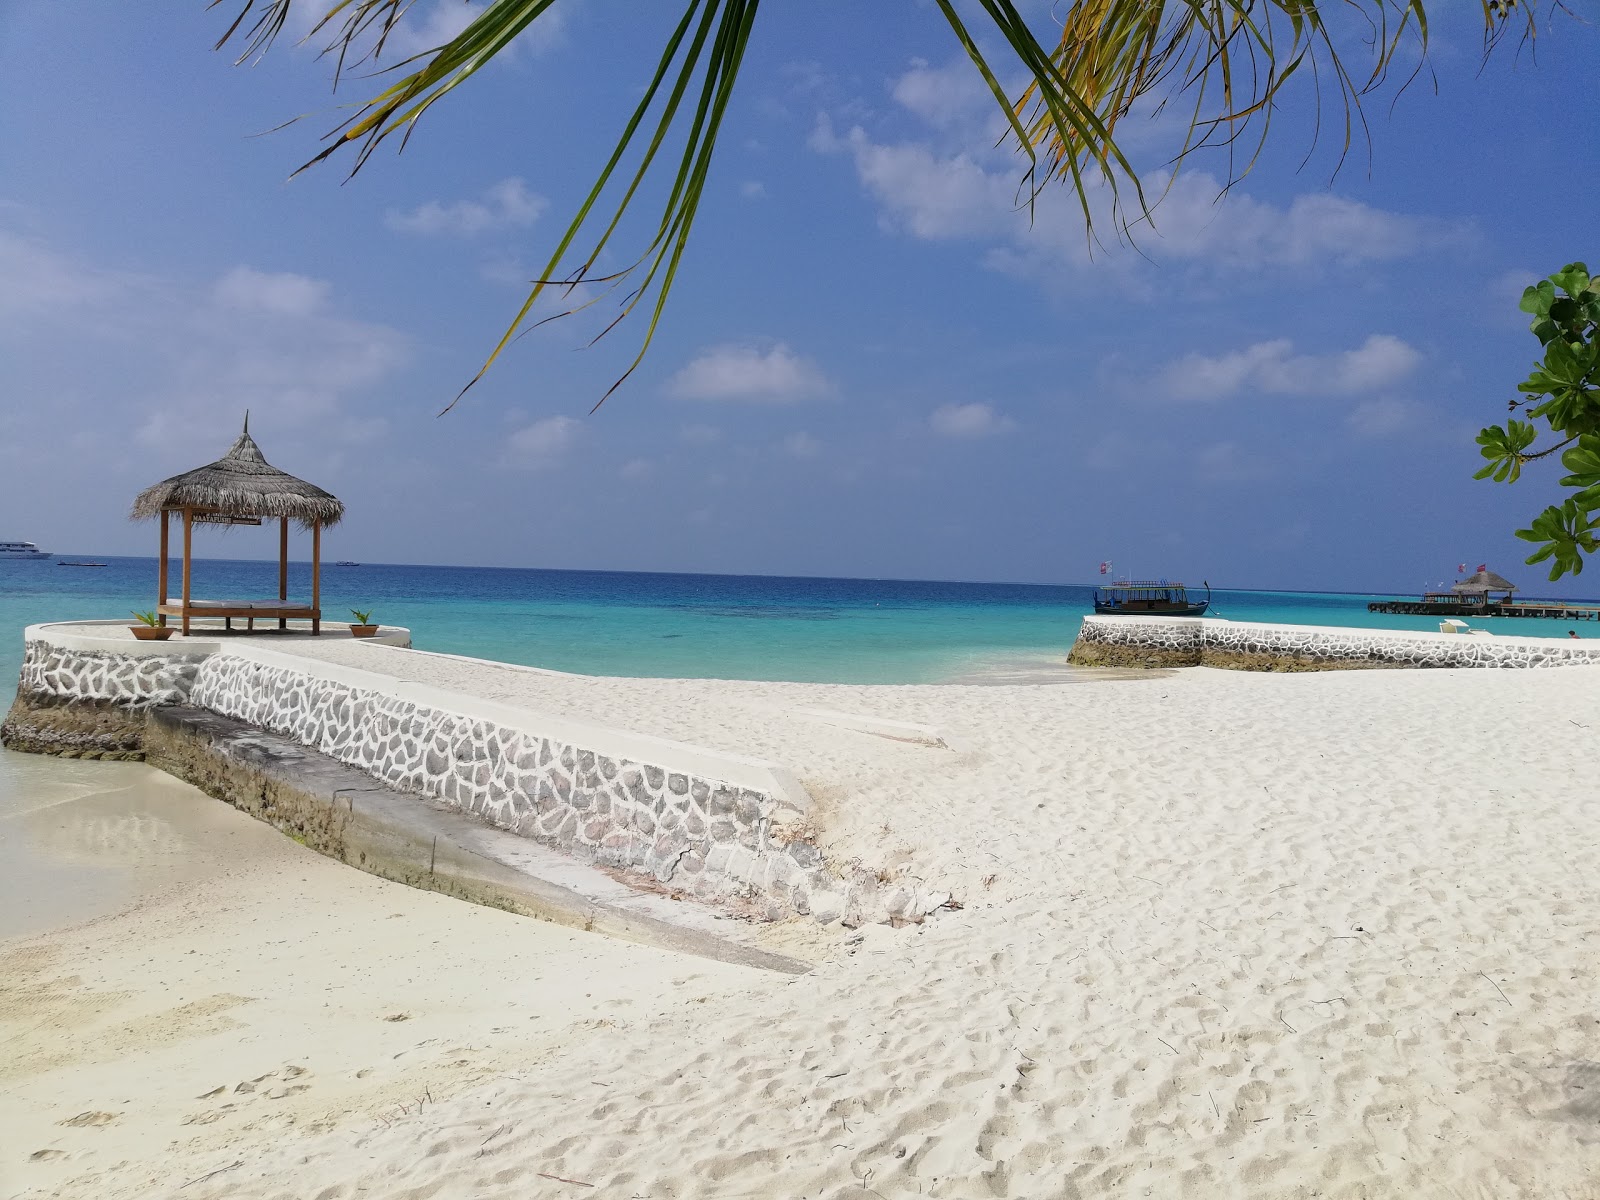 Fotografie cu Maayafushi Island Resort cu o suprafață de apa pură turcoaz